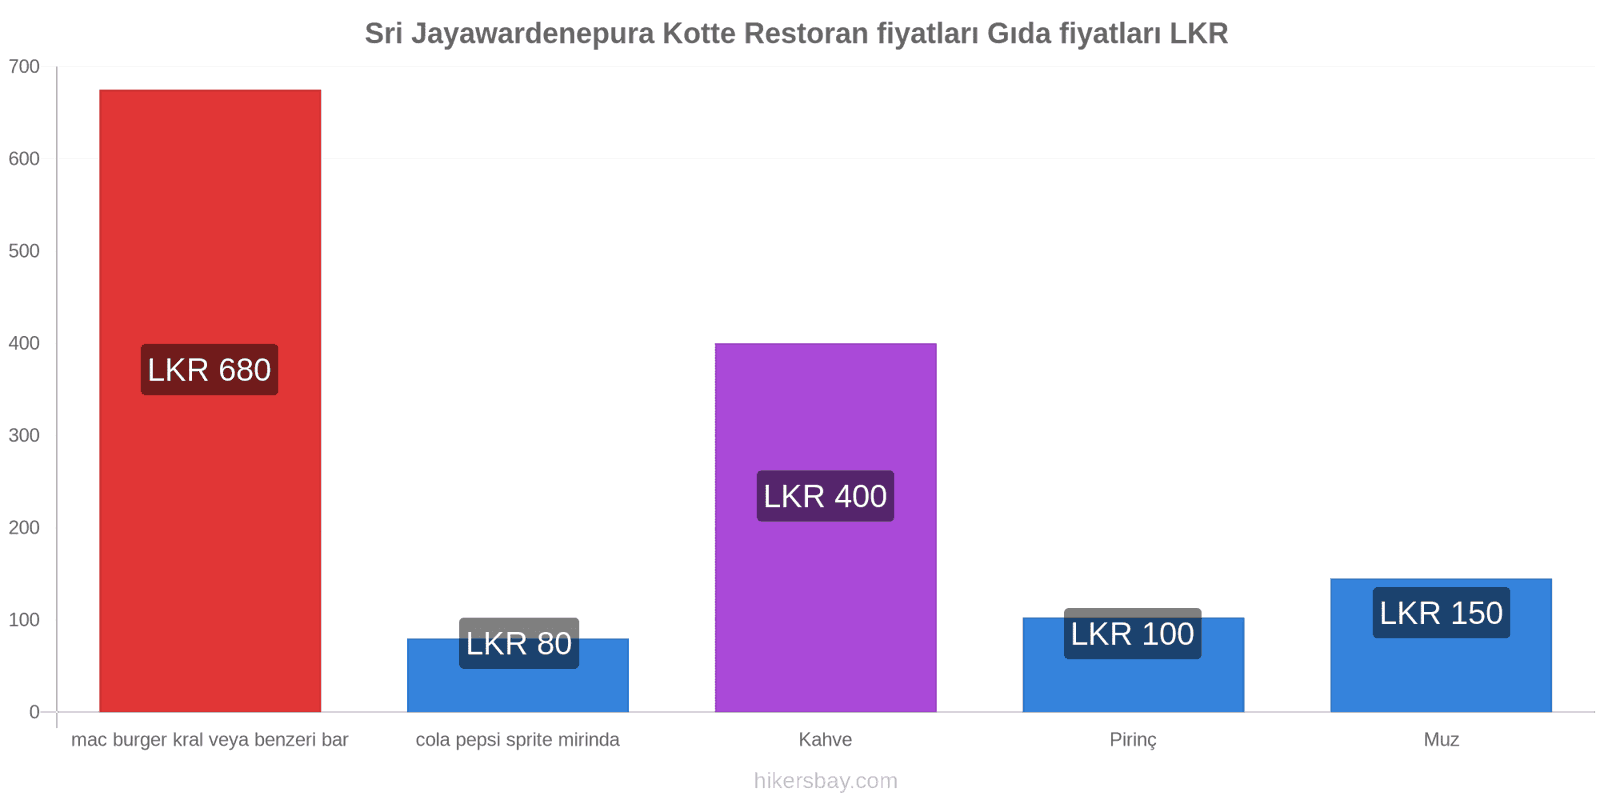 Sri Jayawardenepura Kotte fiyat değişiklikleri hikersbay.com